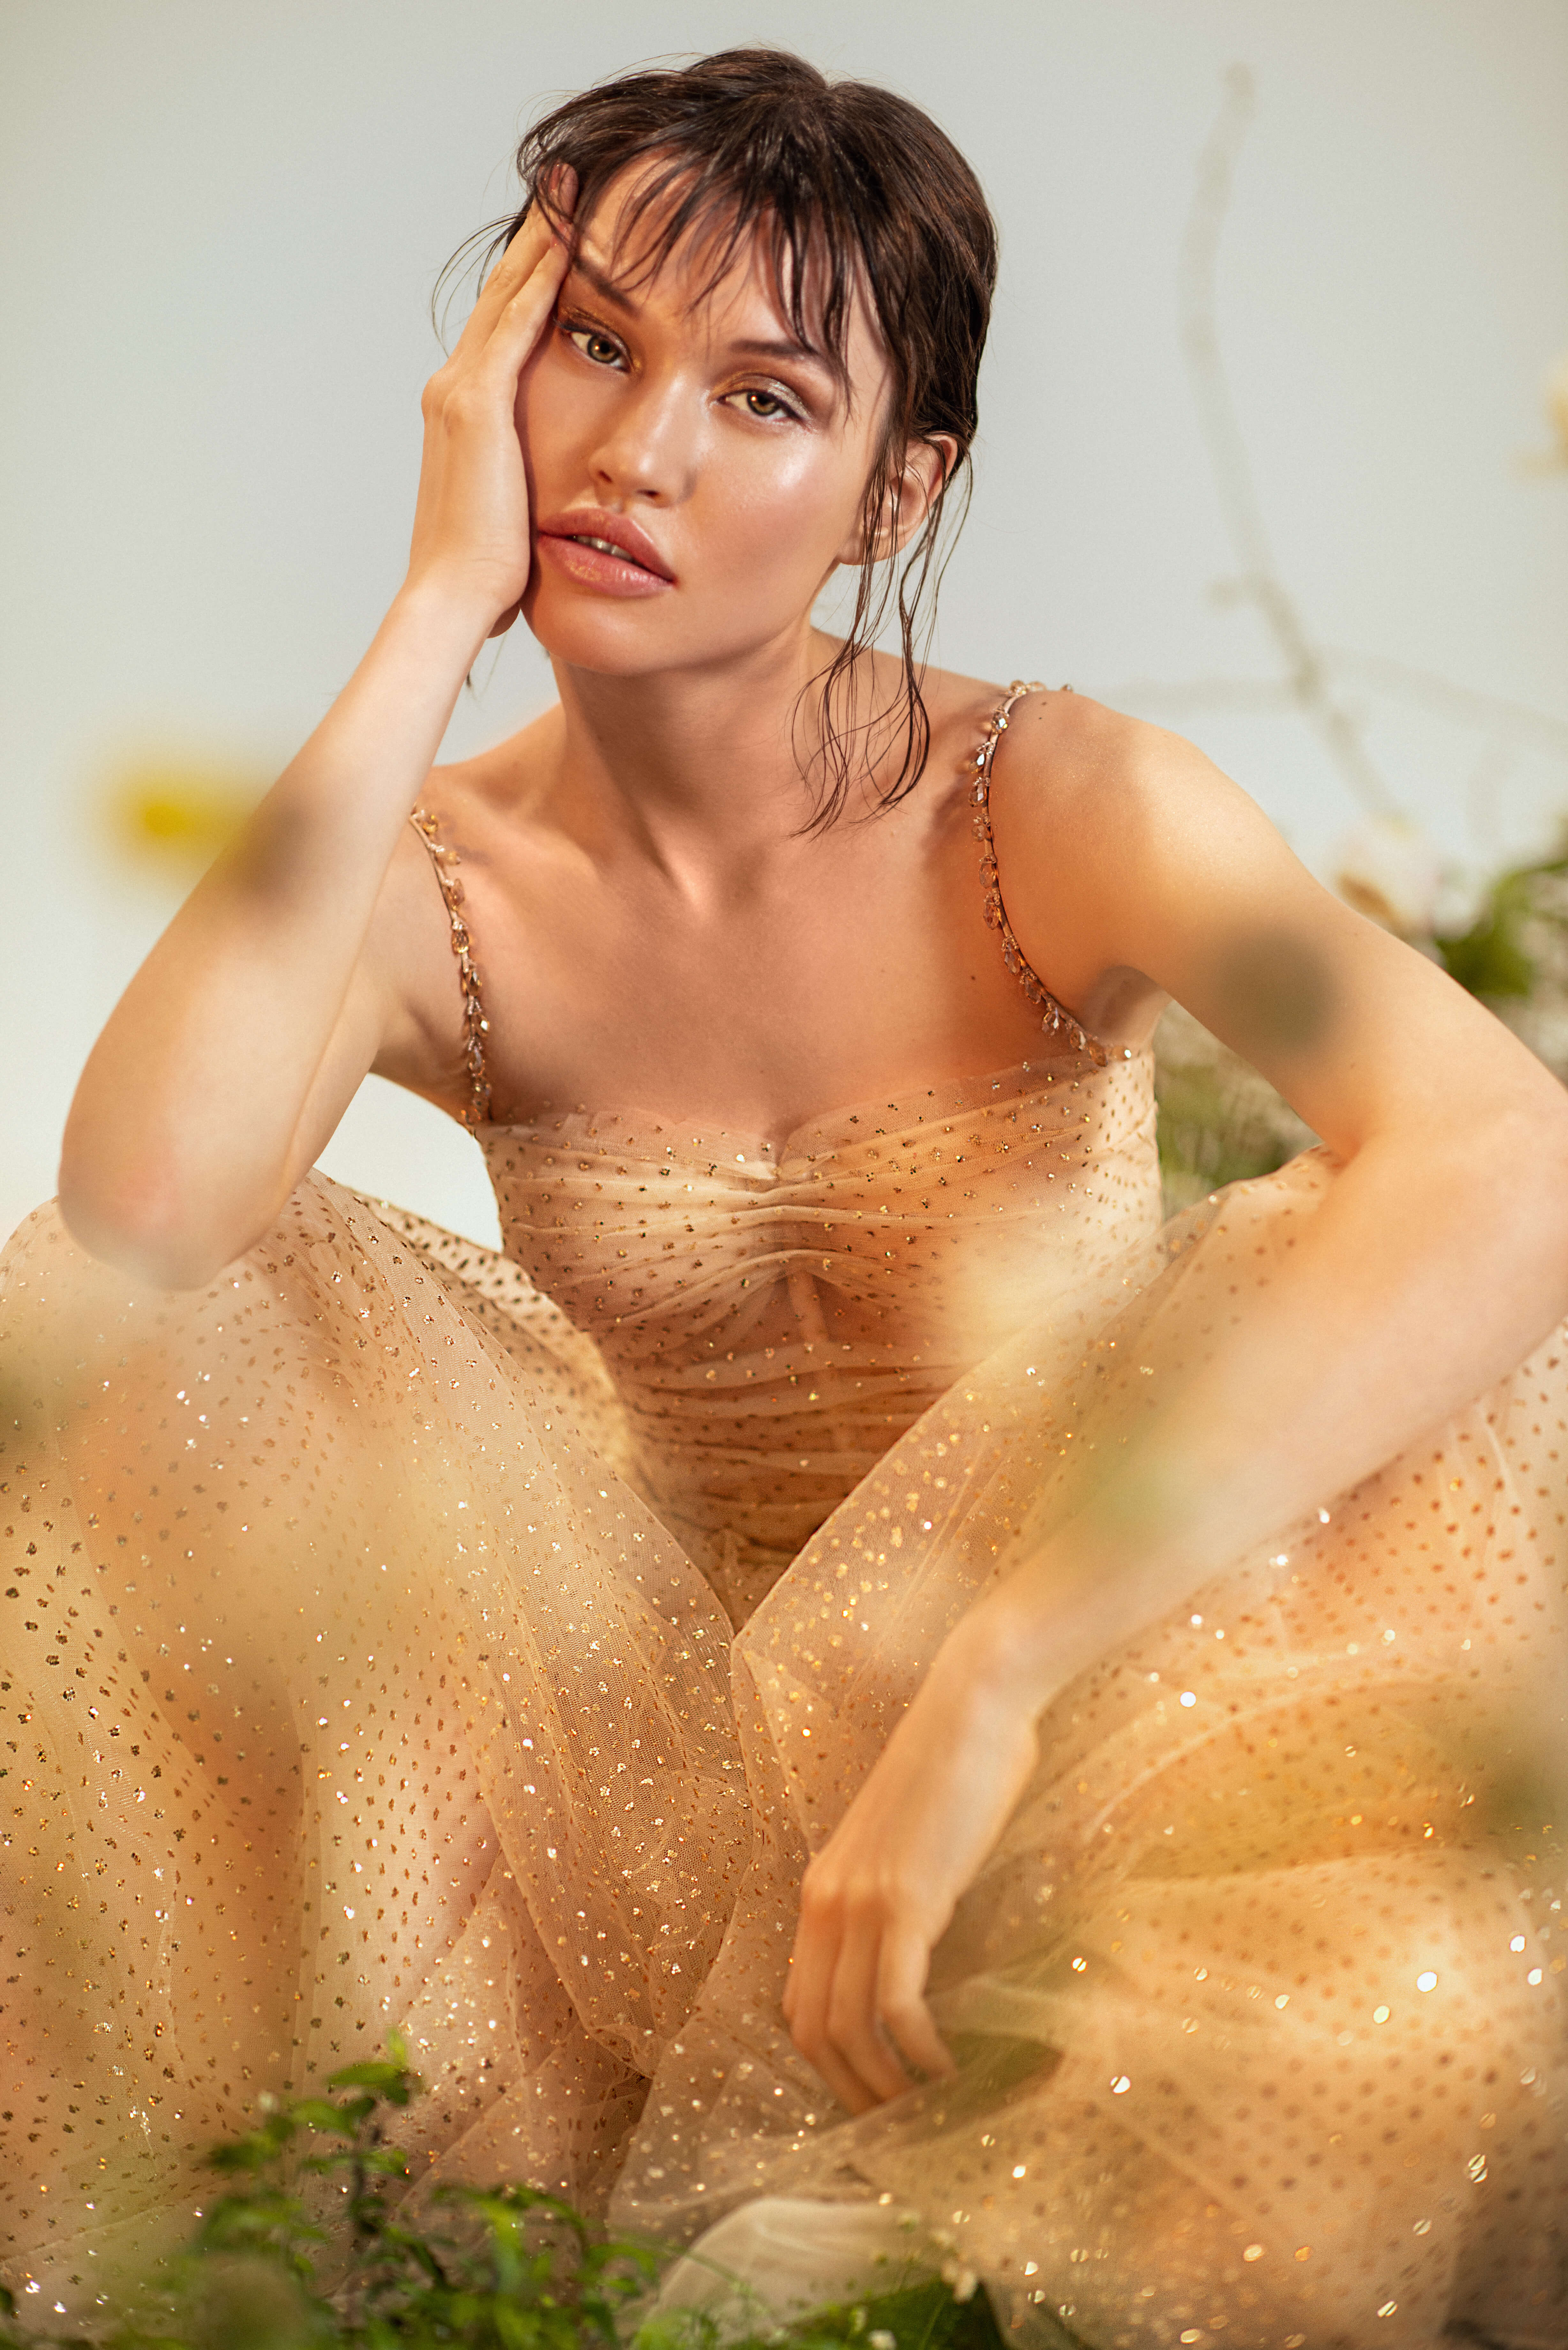 Купить свадебное платье «Авис» Рара Авис из коллекции Оазис 2022 года в салоне «Мэри Трюфель»